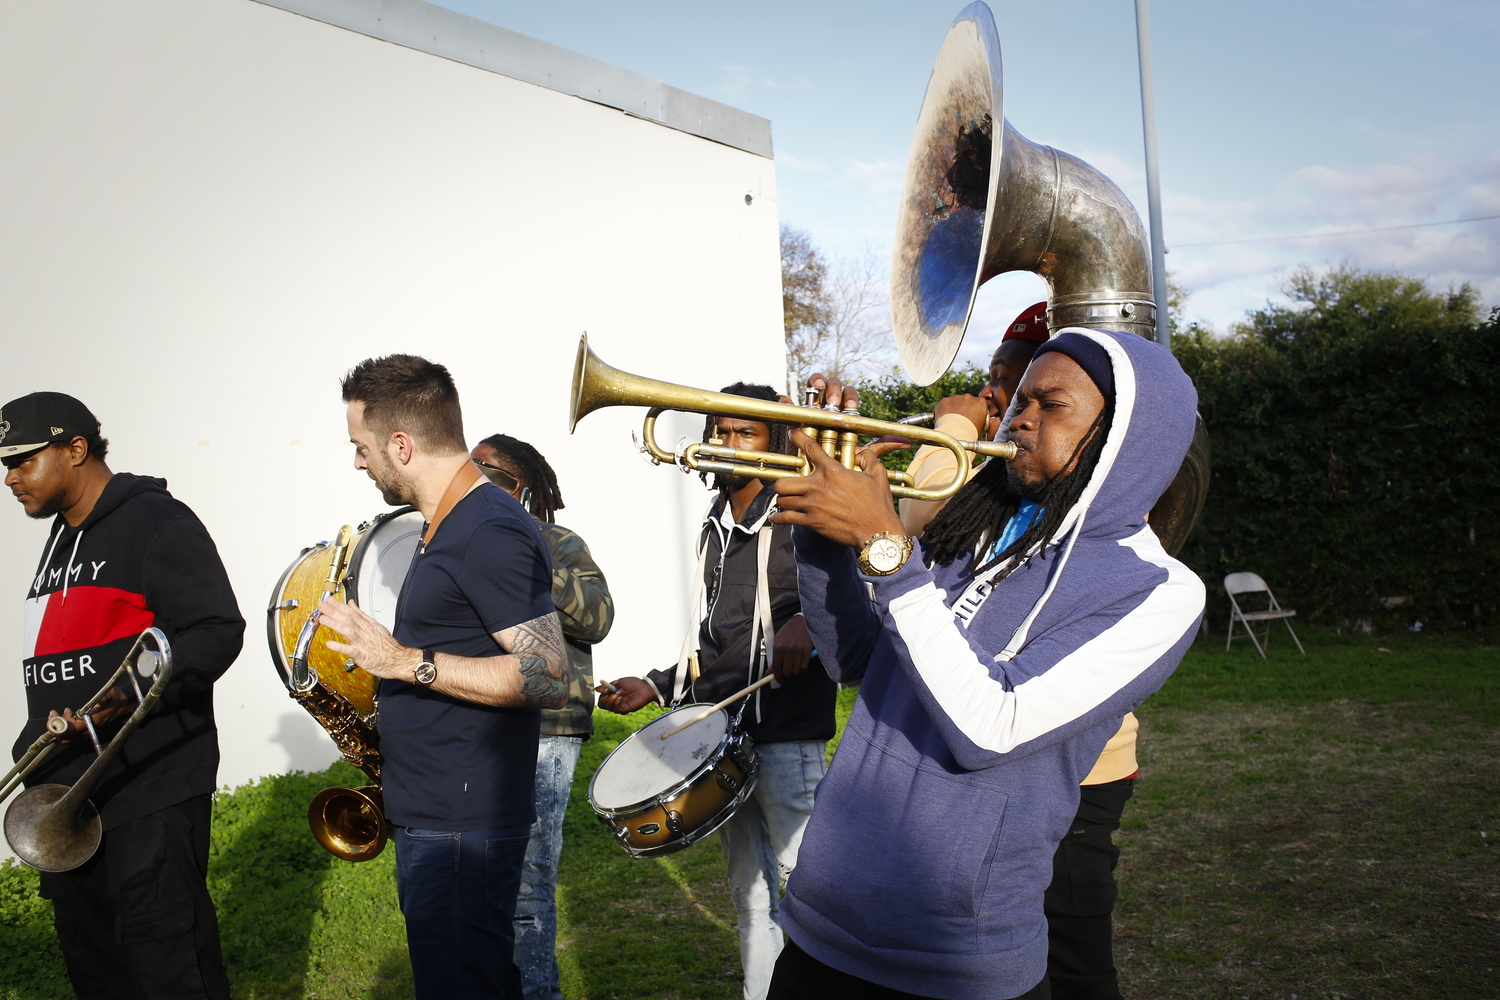 Le brass band TBC dans le jardin d’un bar © Globe Reporters